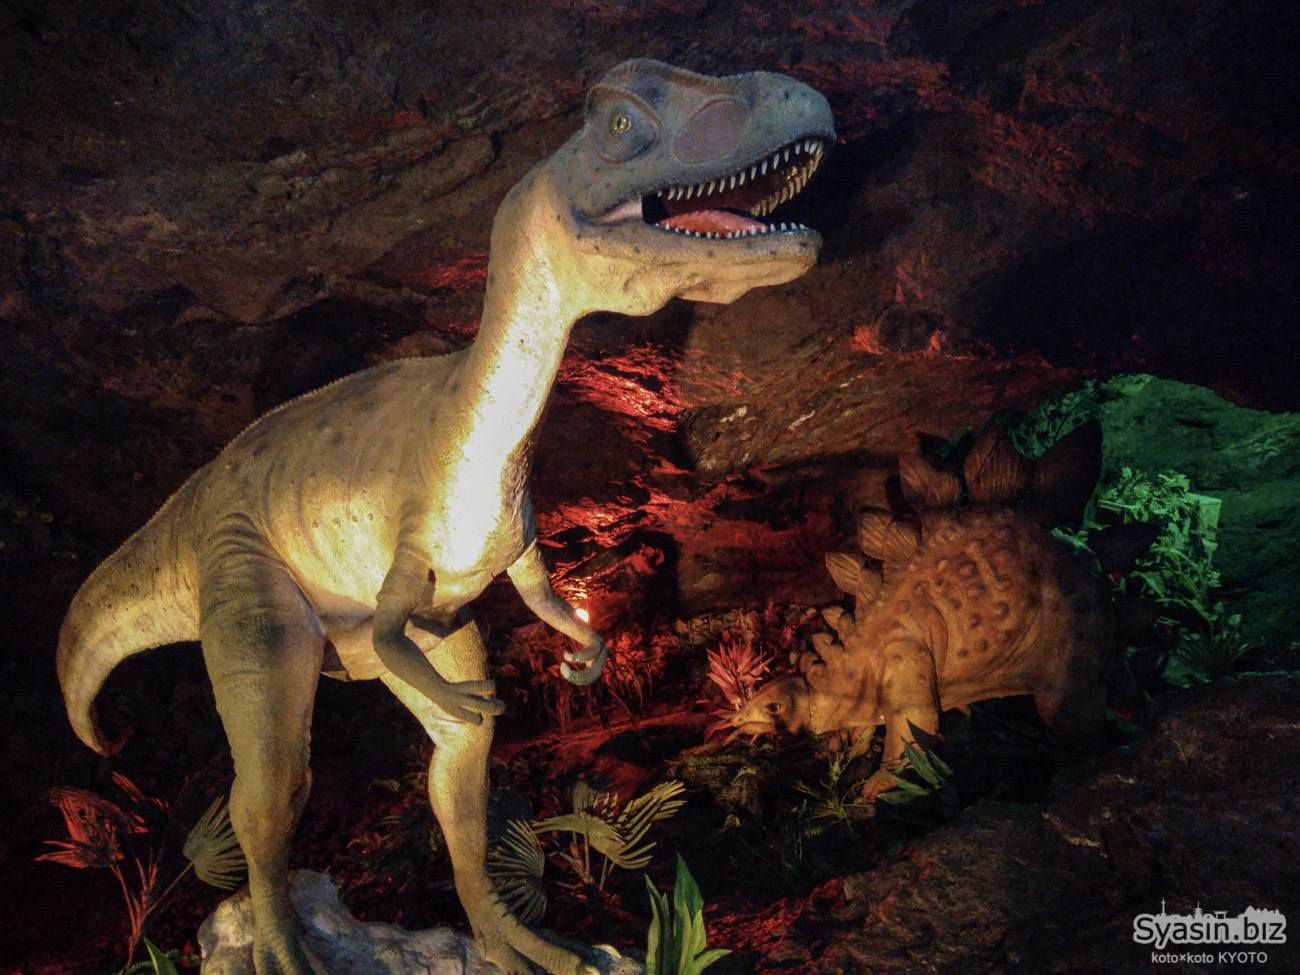 小原洞窟恐竜ランド – 洞窟に広がるジュラシックパークと地獄と極楽